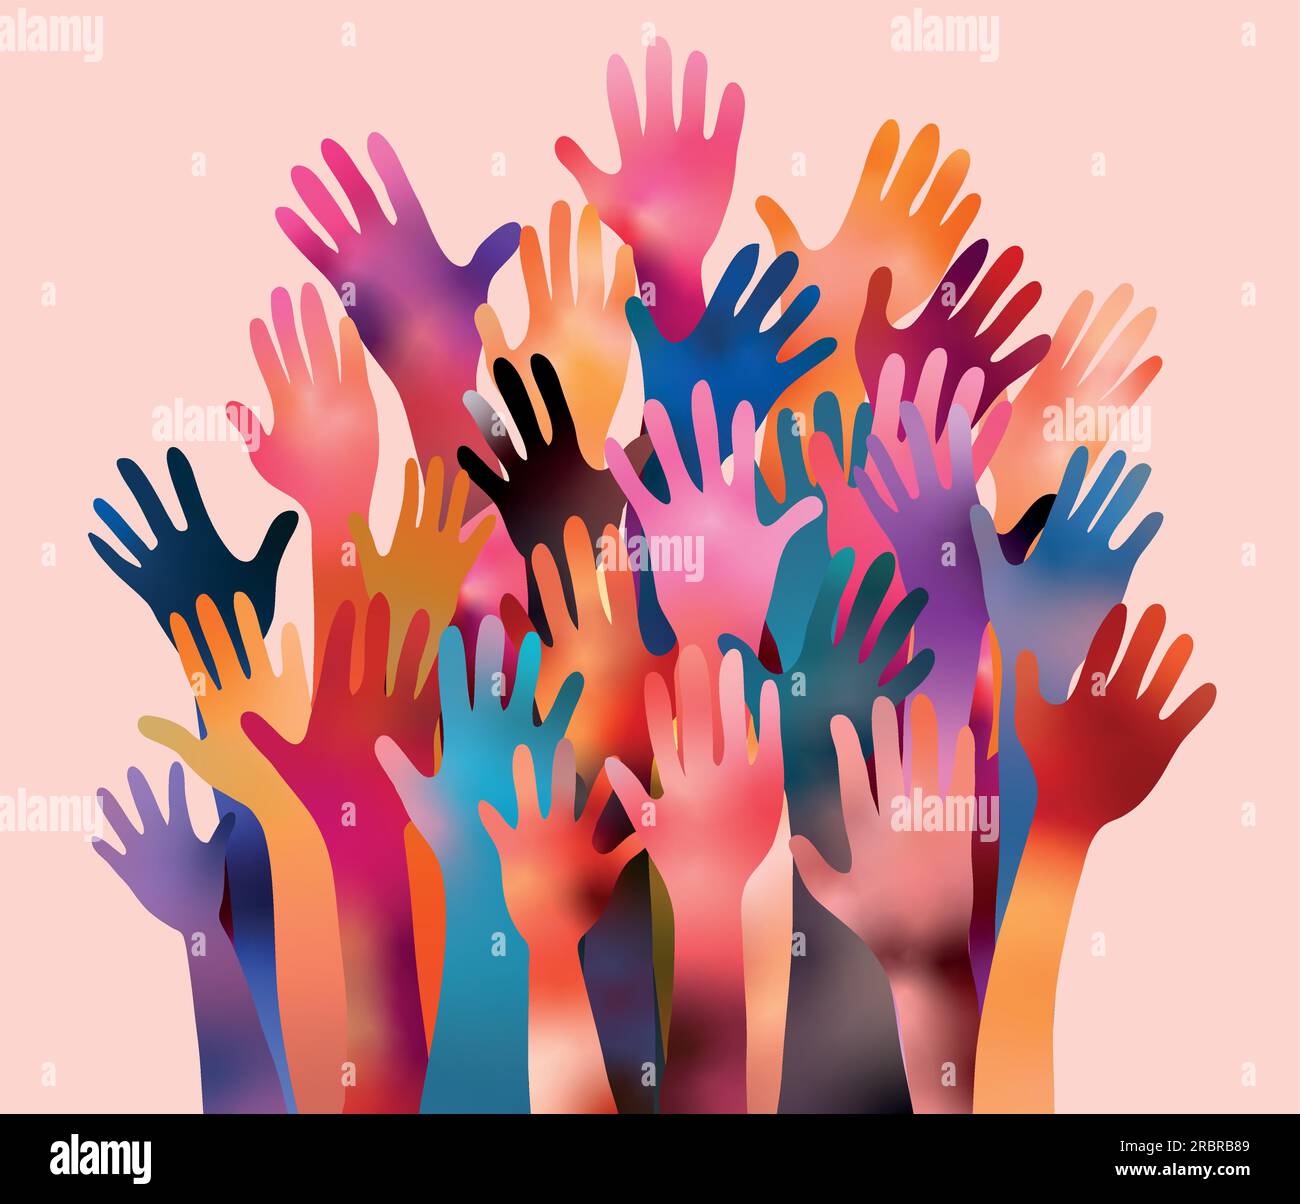 Poster mit Freiwilligen mit erhobenen Armen. Vielfalt der Menschen. Wohltätige Spende. Unterstützung und Unterstützung. Multikulturelle Gemeinschaft. NGO. Hilfe. Hilfe! Hilfe! Stock Vektor